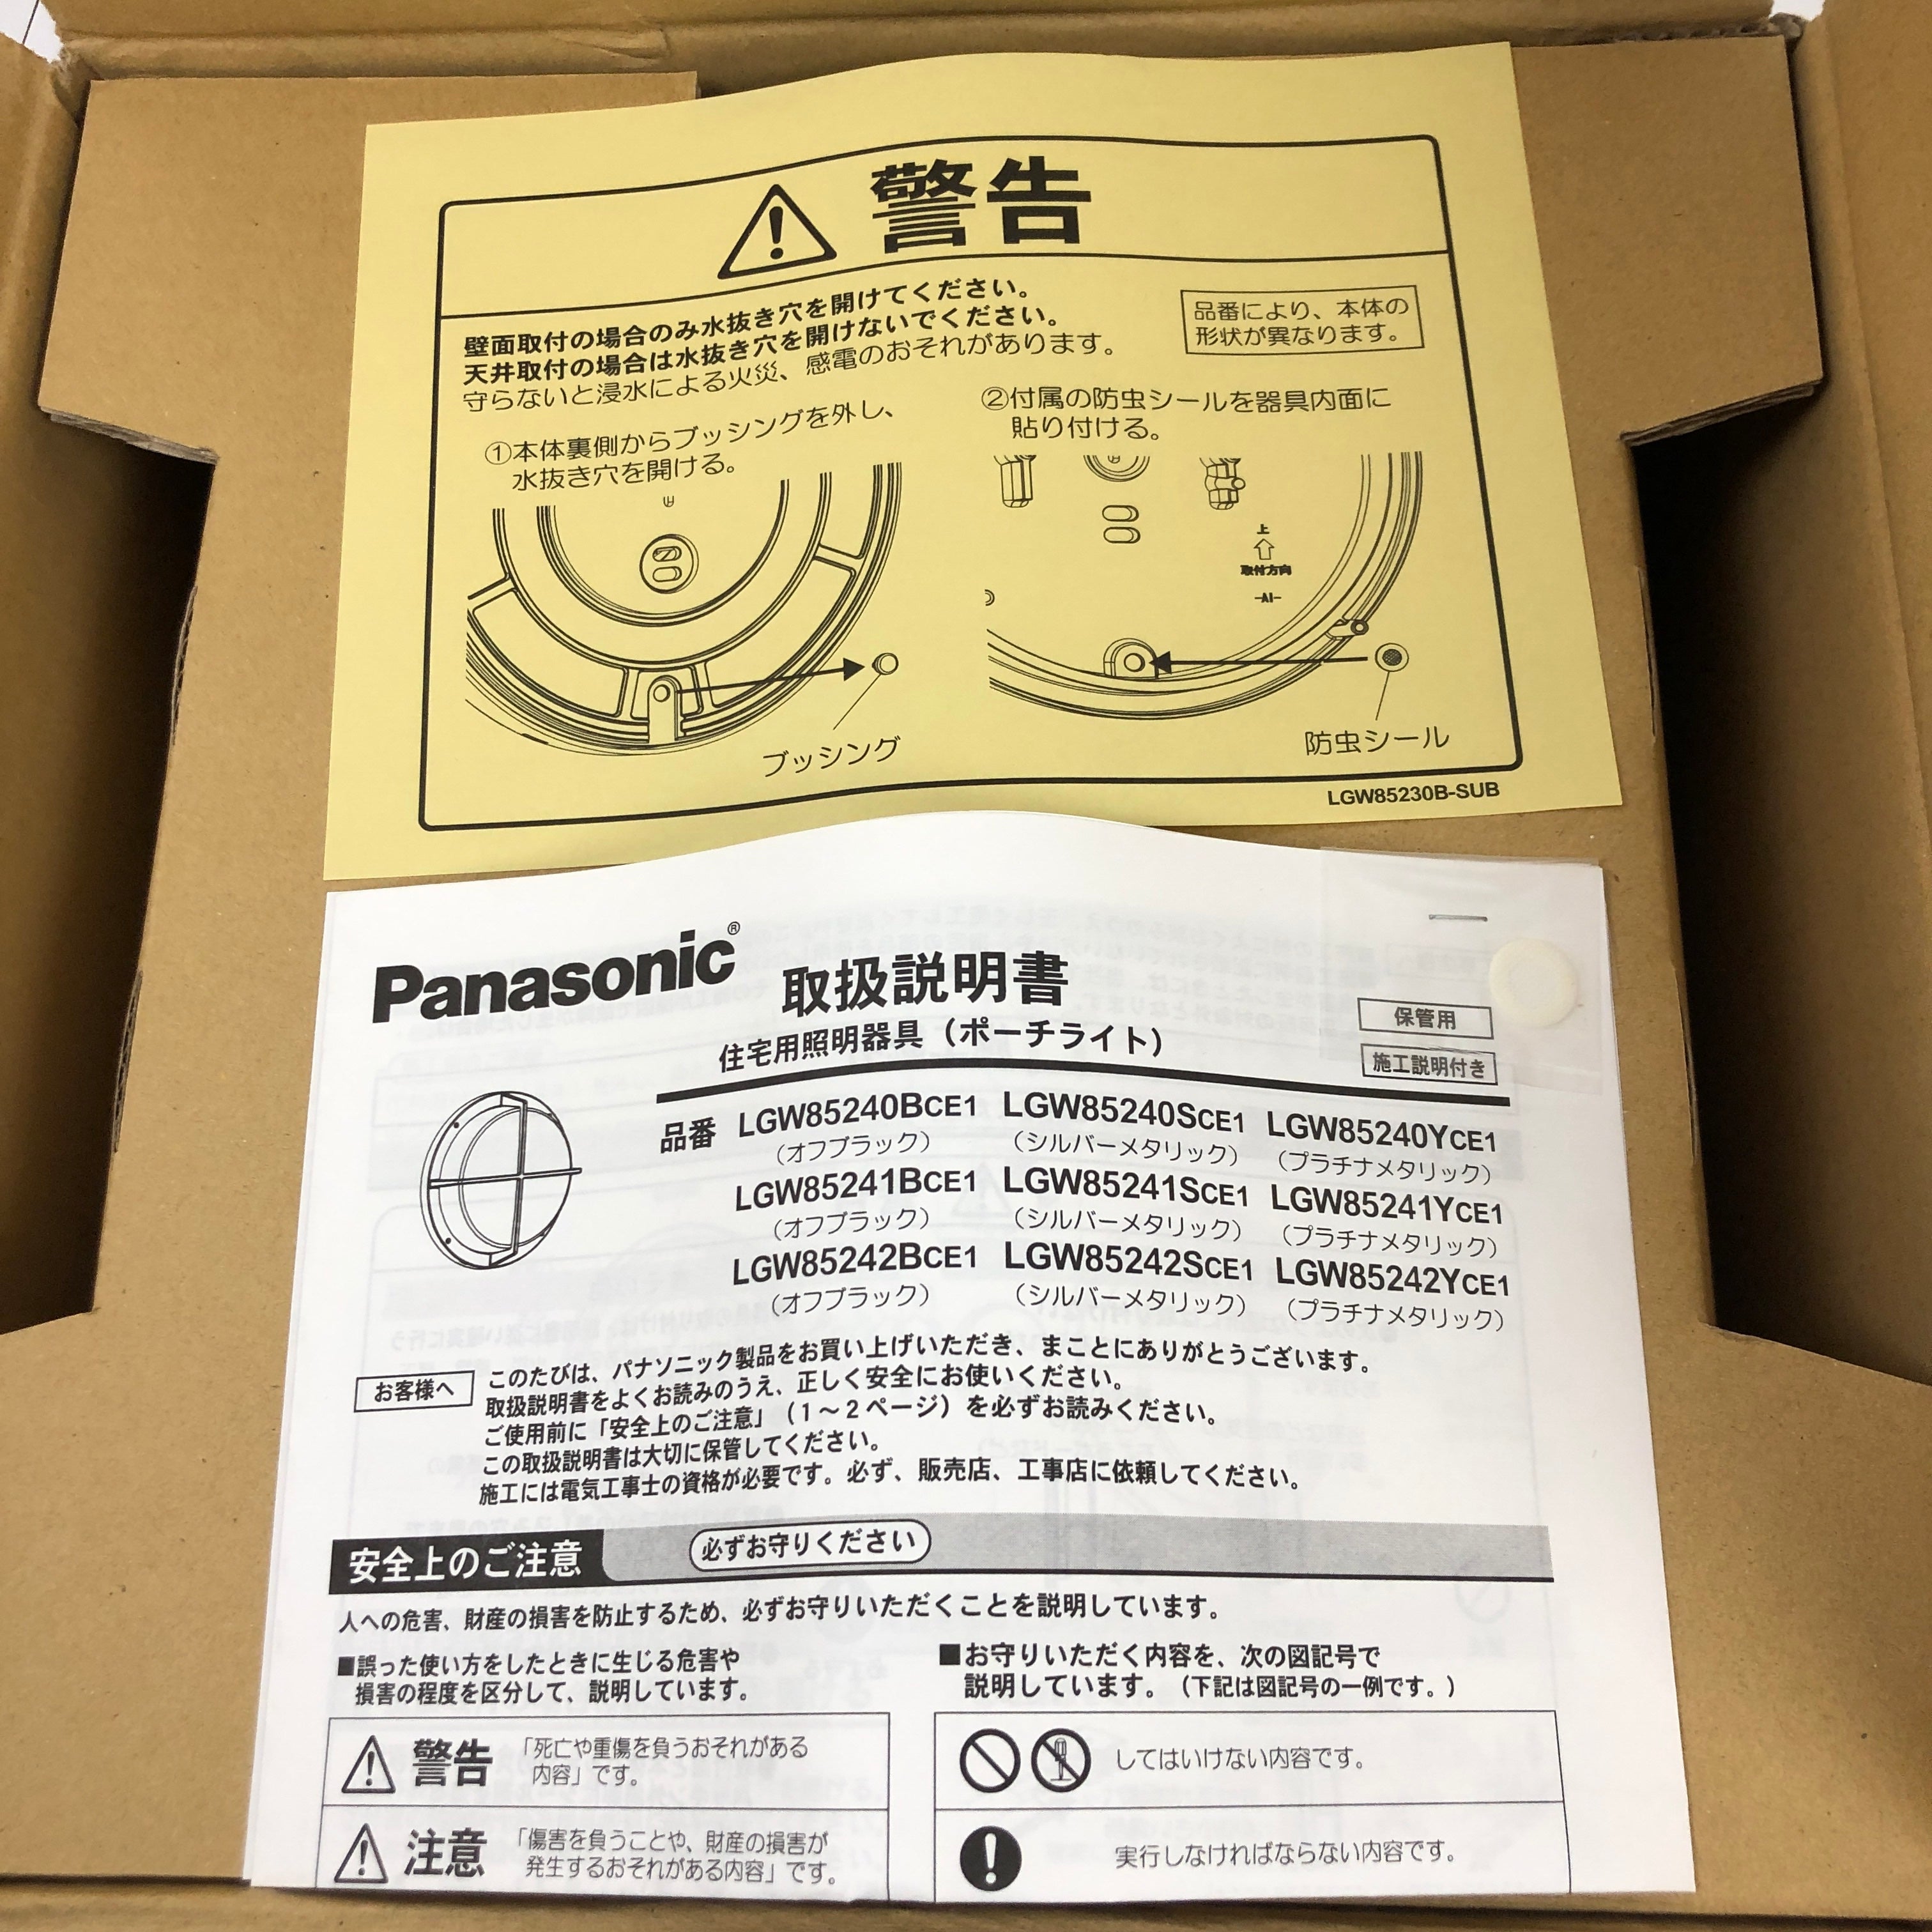 パナソニック(Panasonic) ブラケット LGW85241SCE1 40形 拡散 シルバー - 8